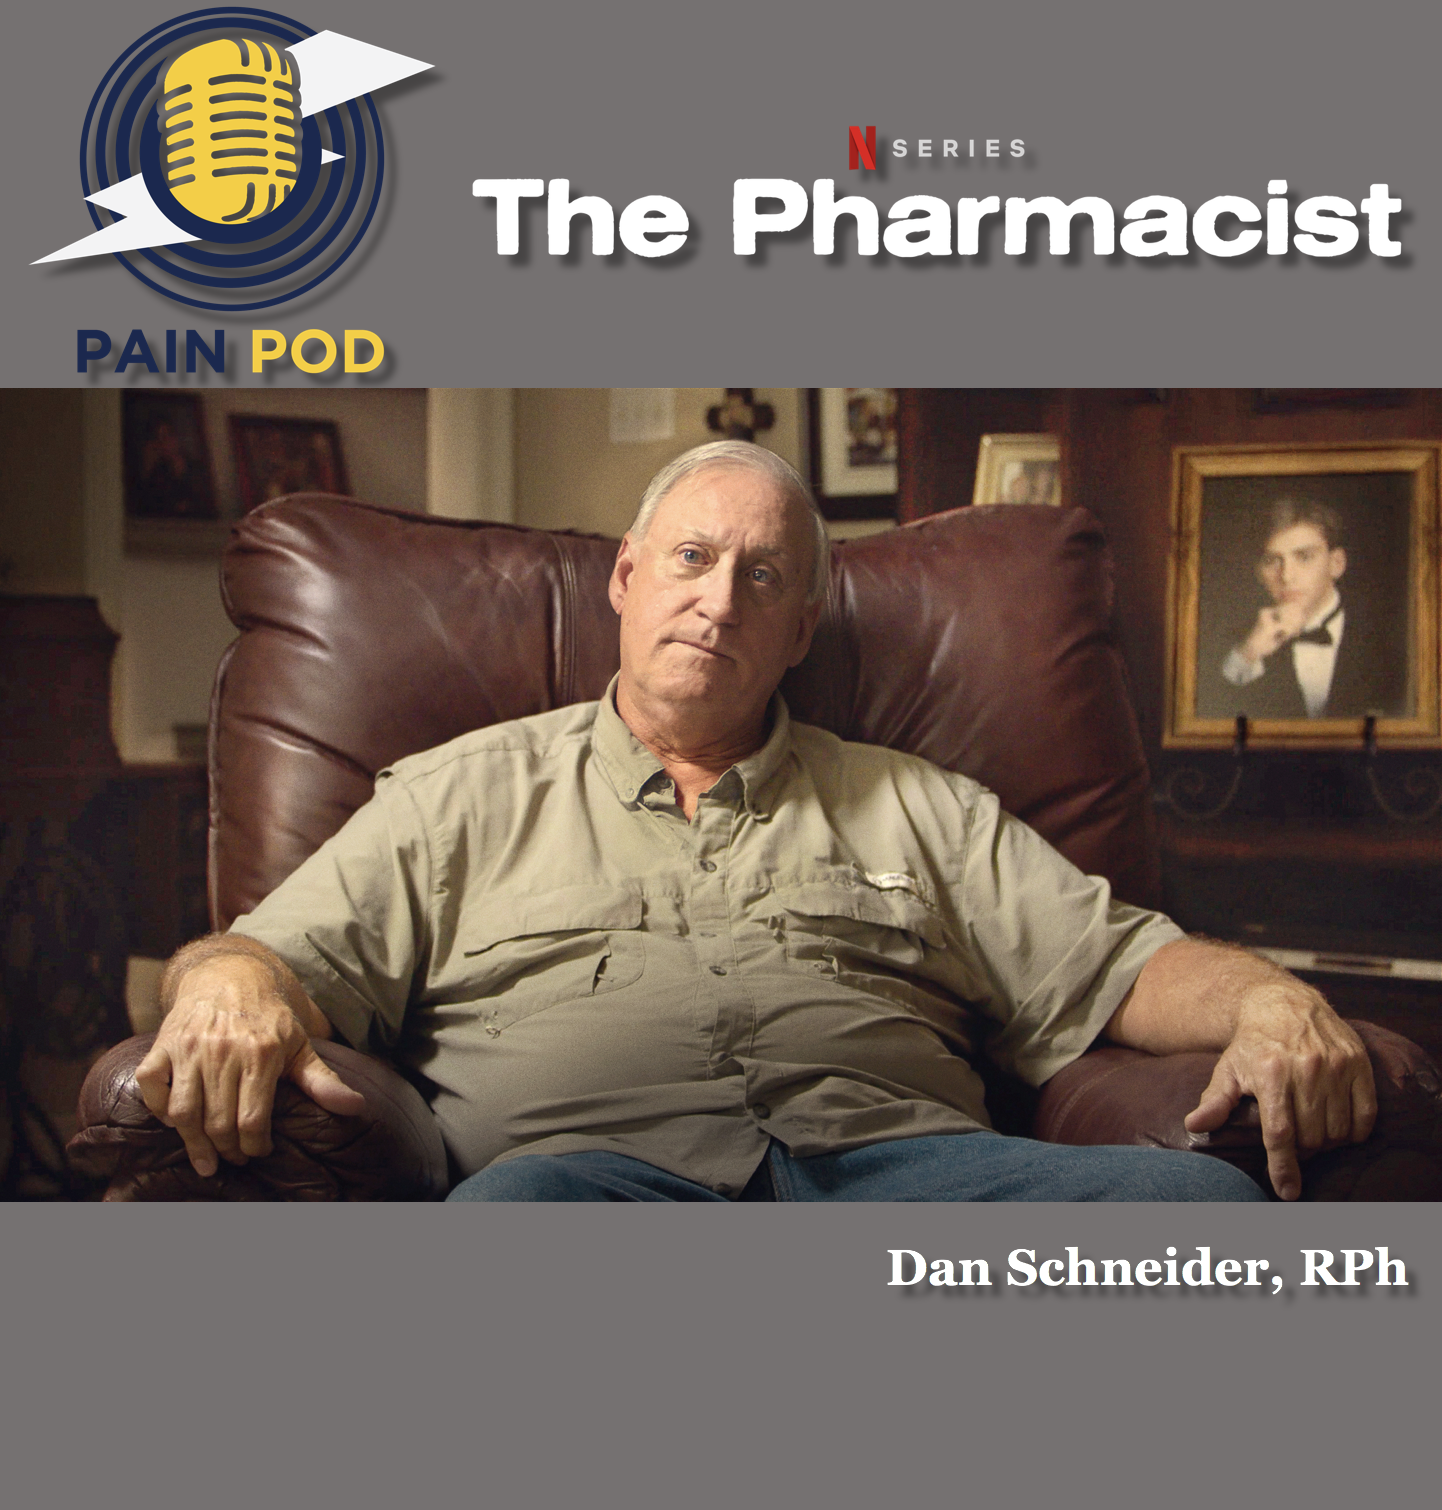 The Pharmacist - Dan Schneider | PAIN POD